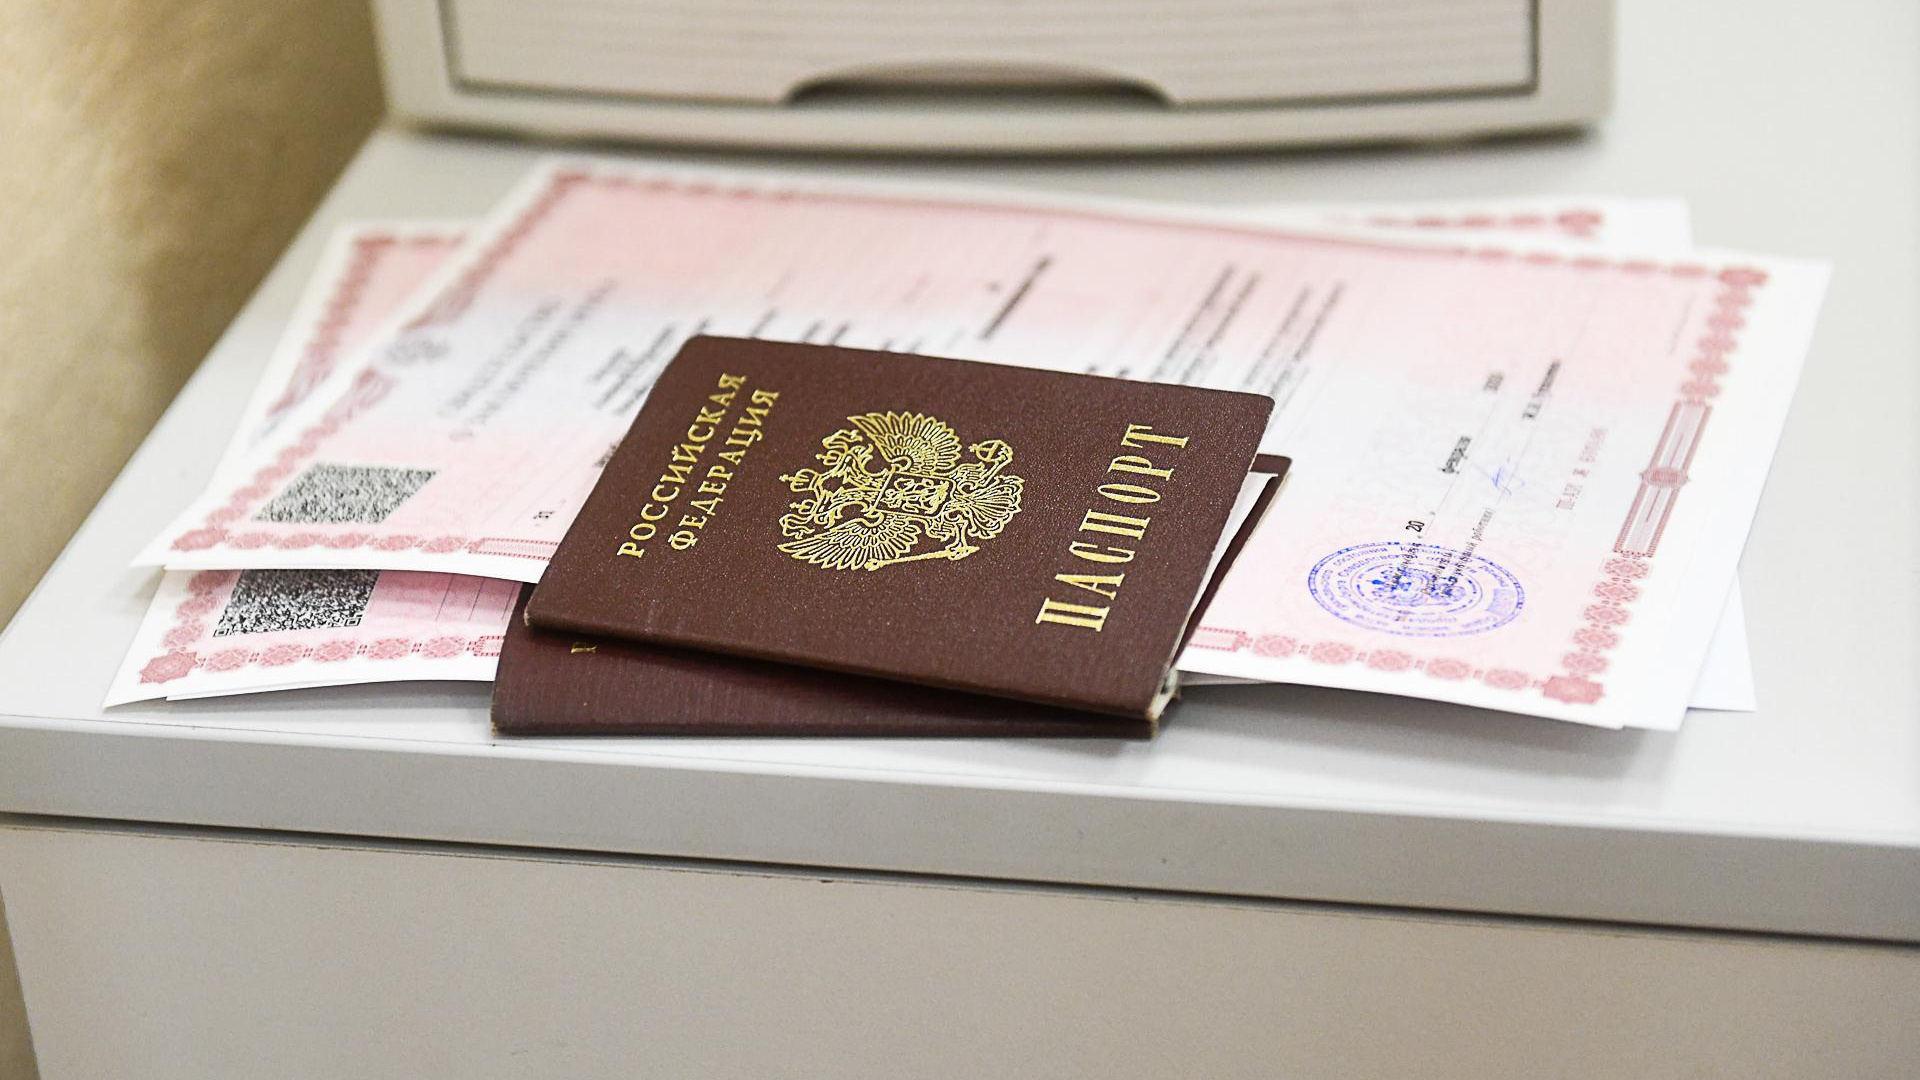 «Мне испортили документ!» Екатеринбурженке поставили печать о гражданстве с тремя ошибками